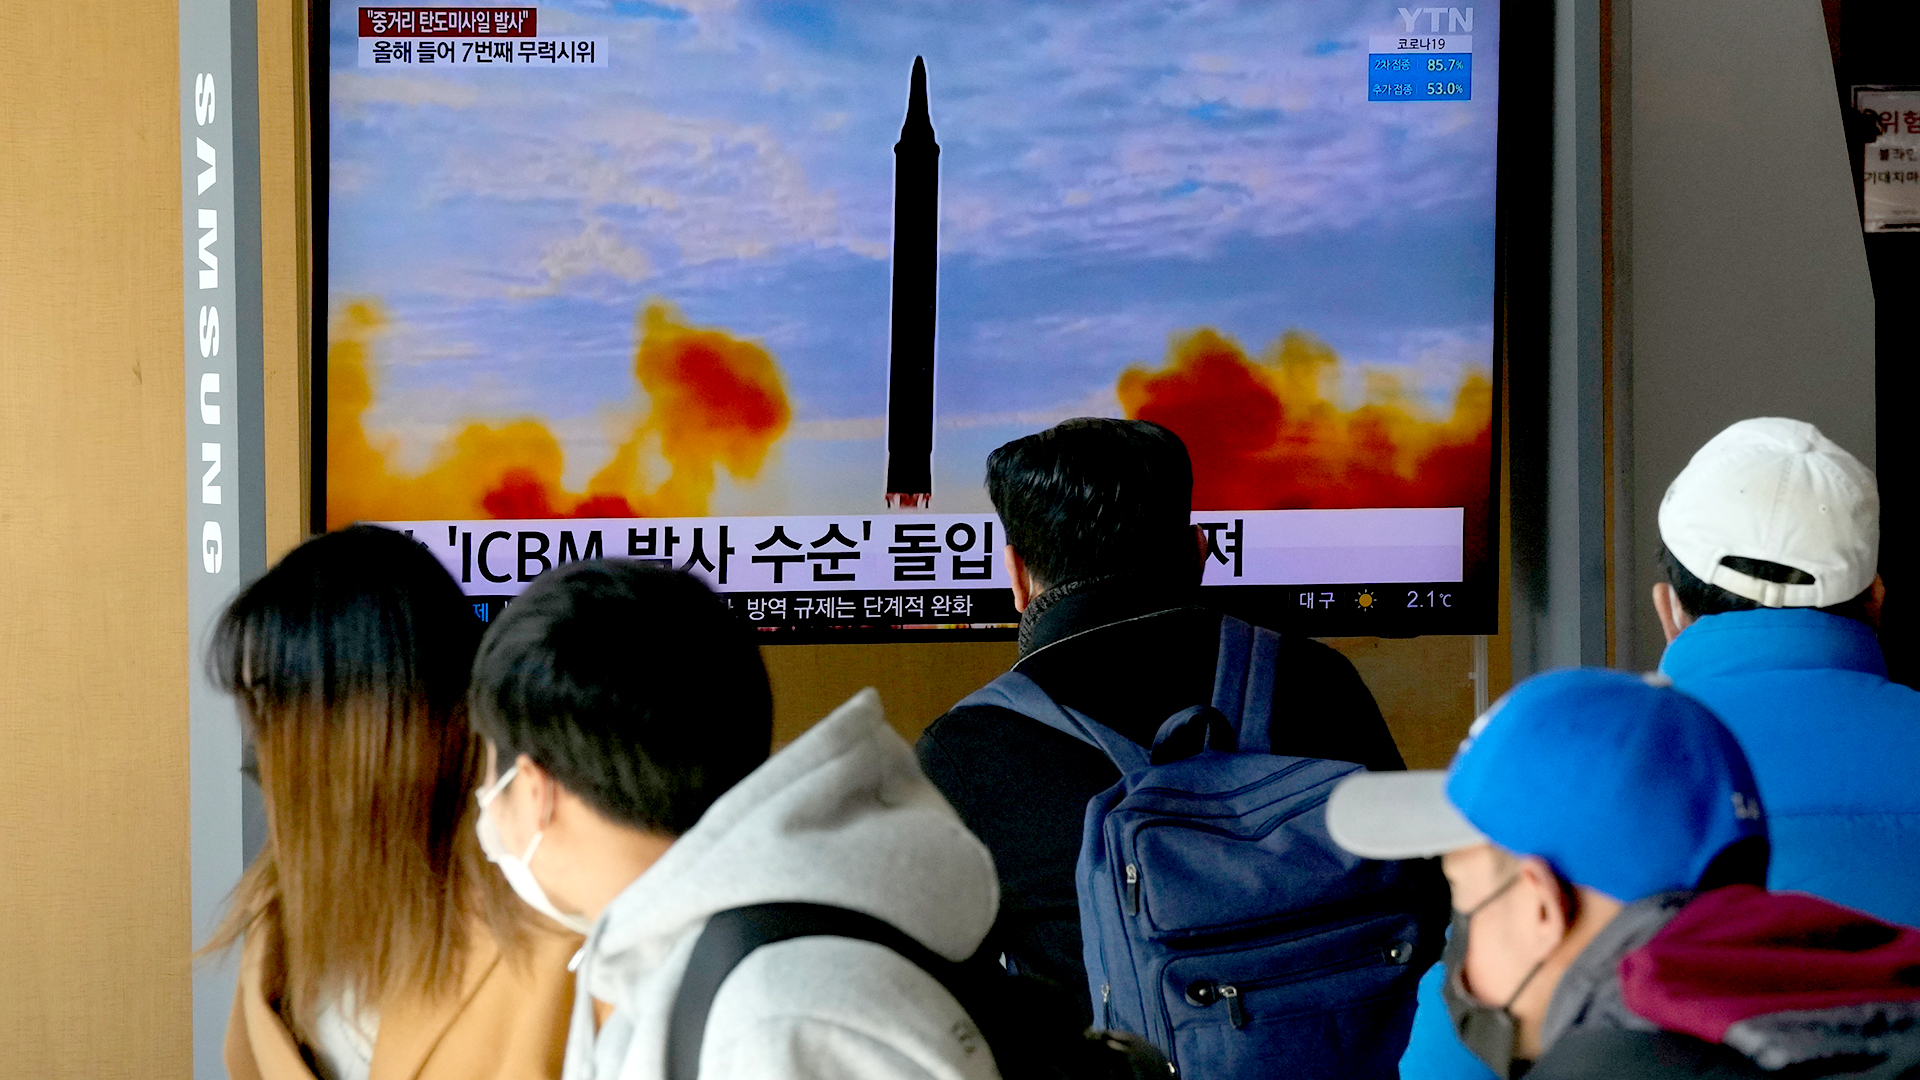 Menschen in Südkorea schauen auf einen Fernsehbildschirm, auf dem eine Nachrichtensendung über den nordkoreanischen Raketenstart gezeigt wird.